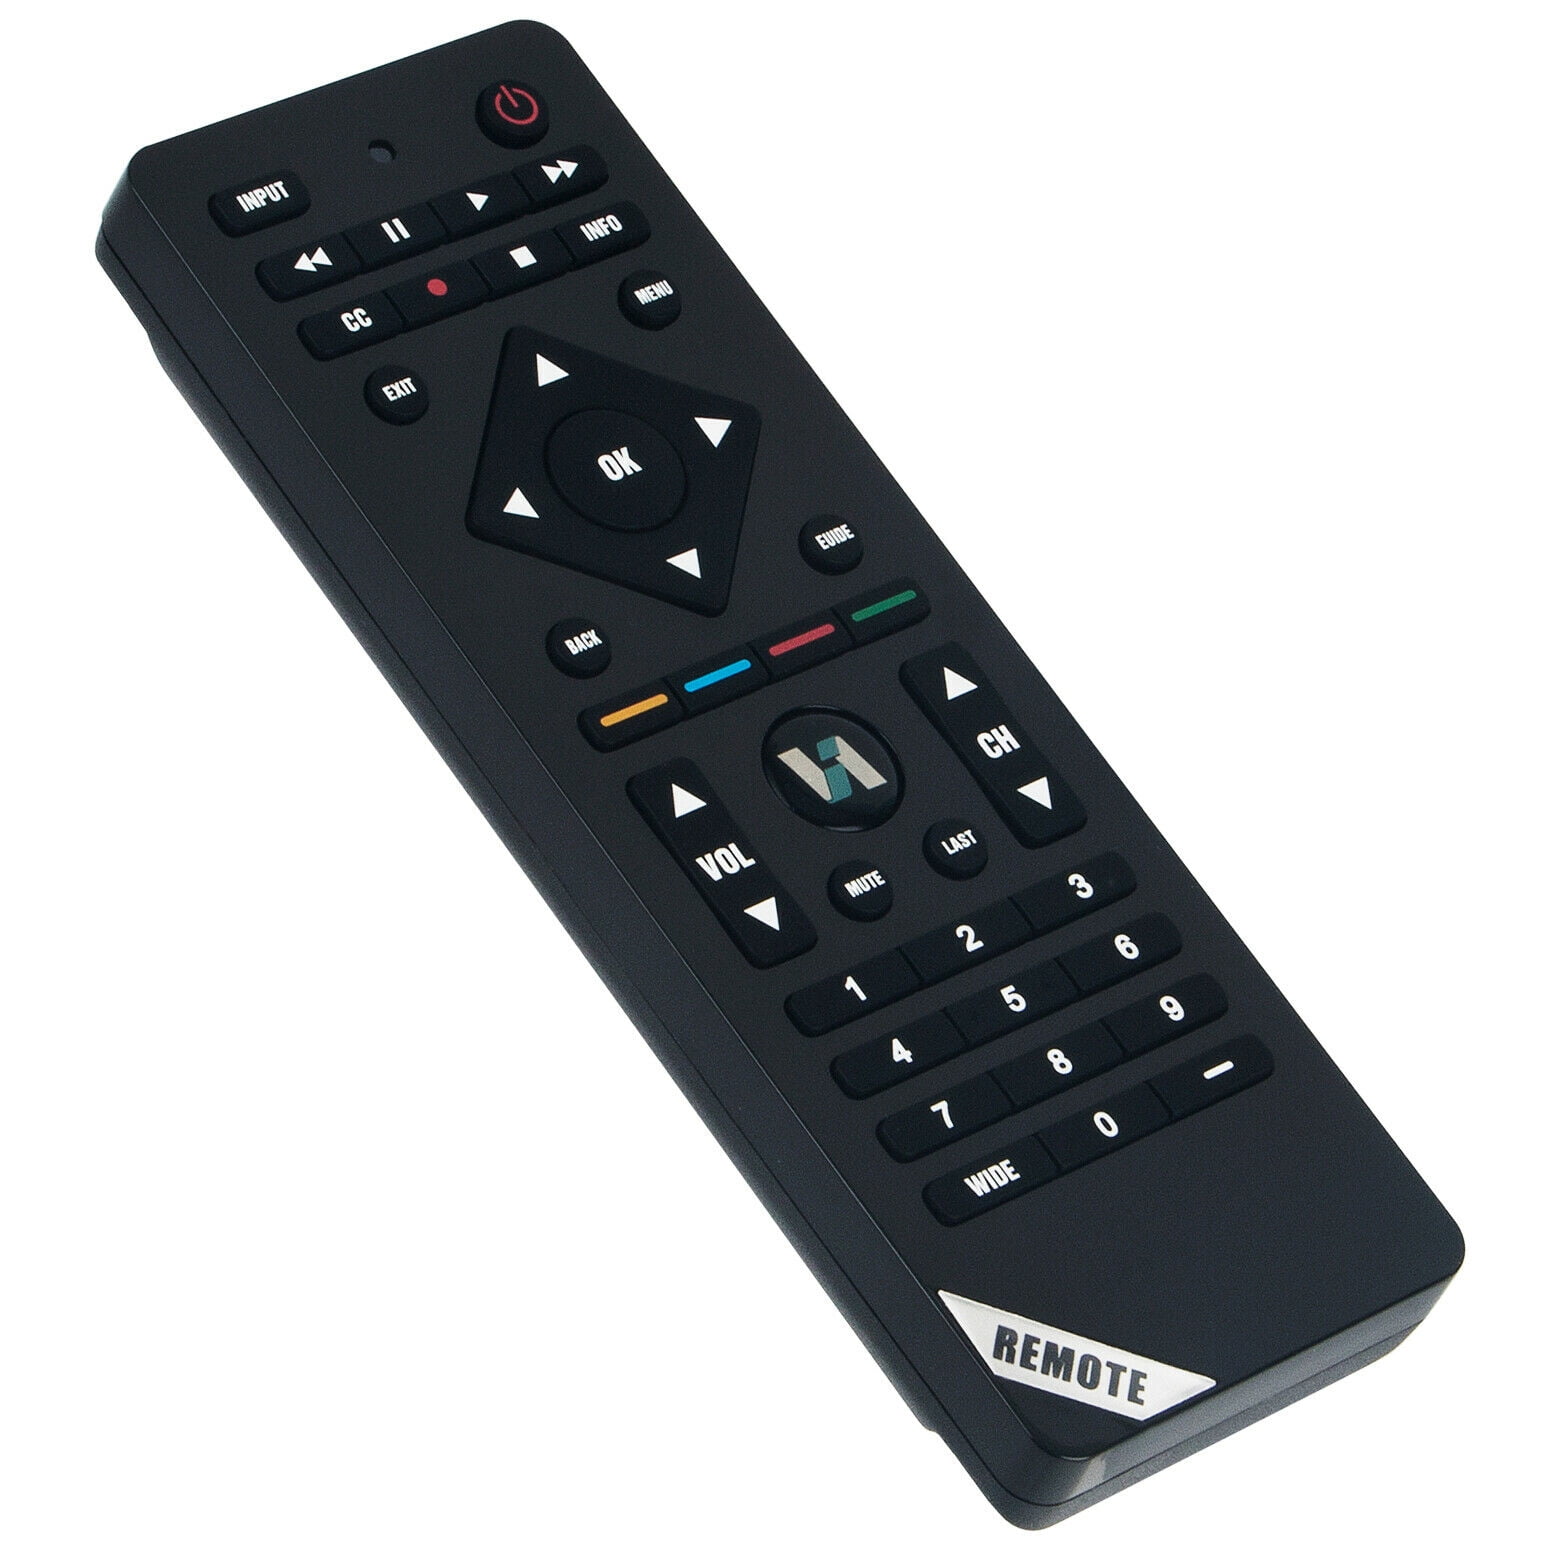 New Vizio VR17 TV Remote control for VIZIO E322VL E472VL E552VL M261VP VXV6222 